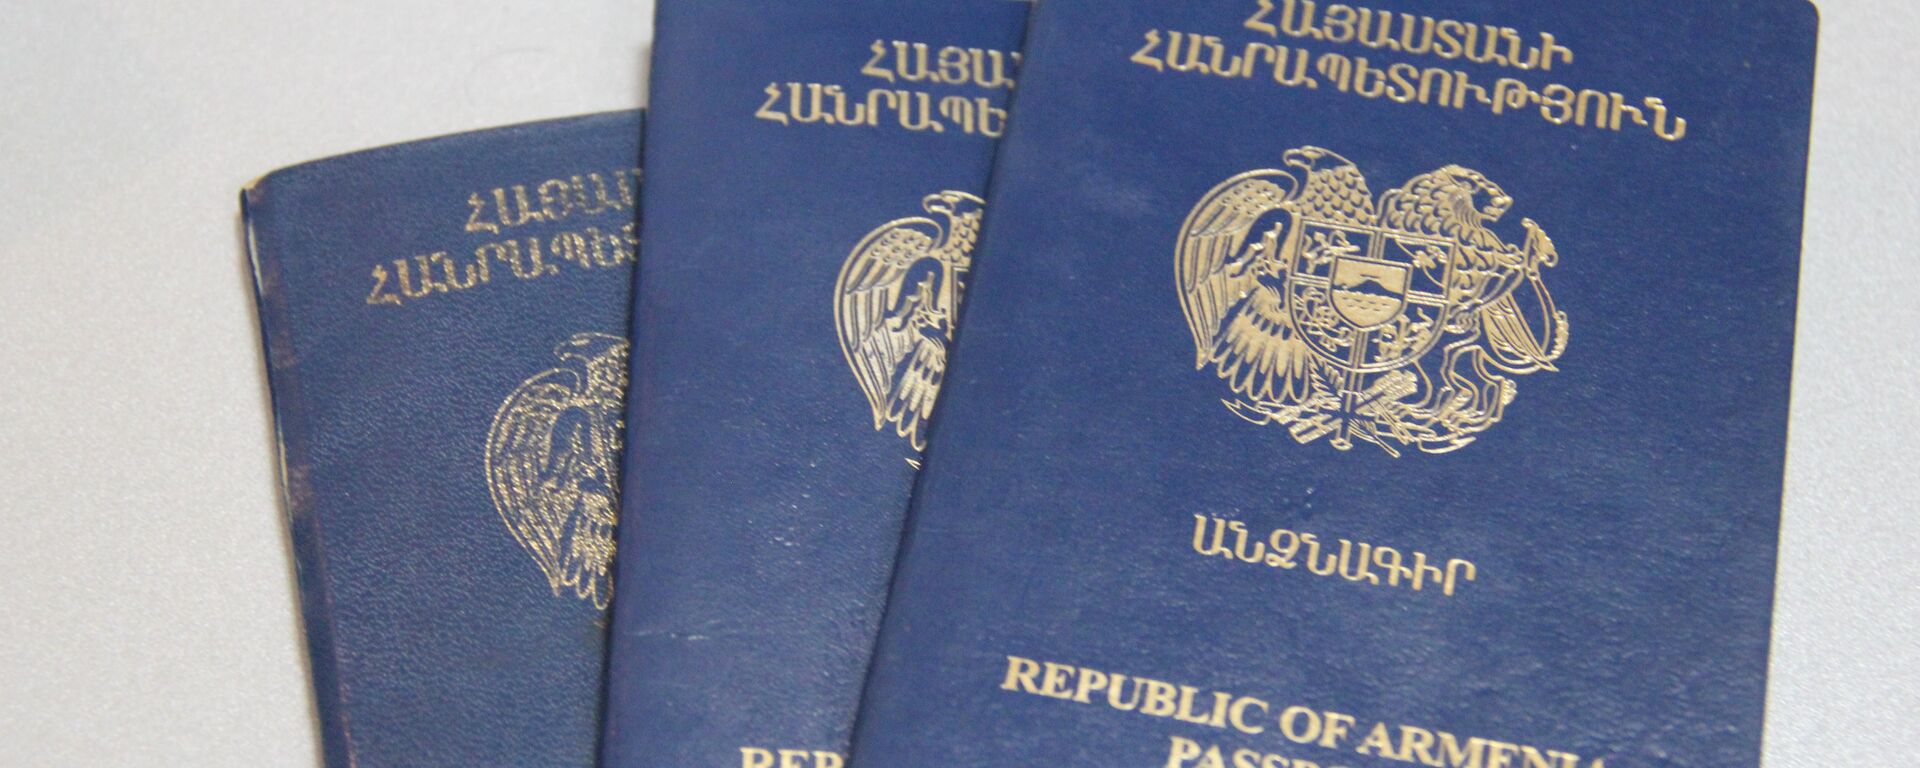 Паспорт гражданина Республики - Sputnik Армения, 1920, 27.10.2021